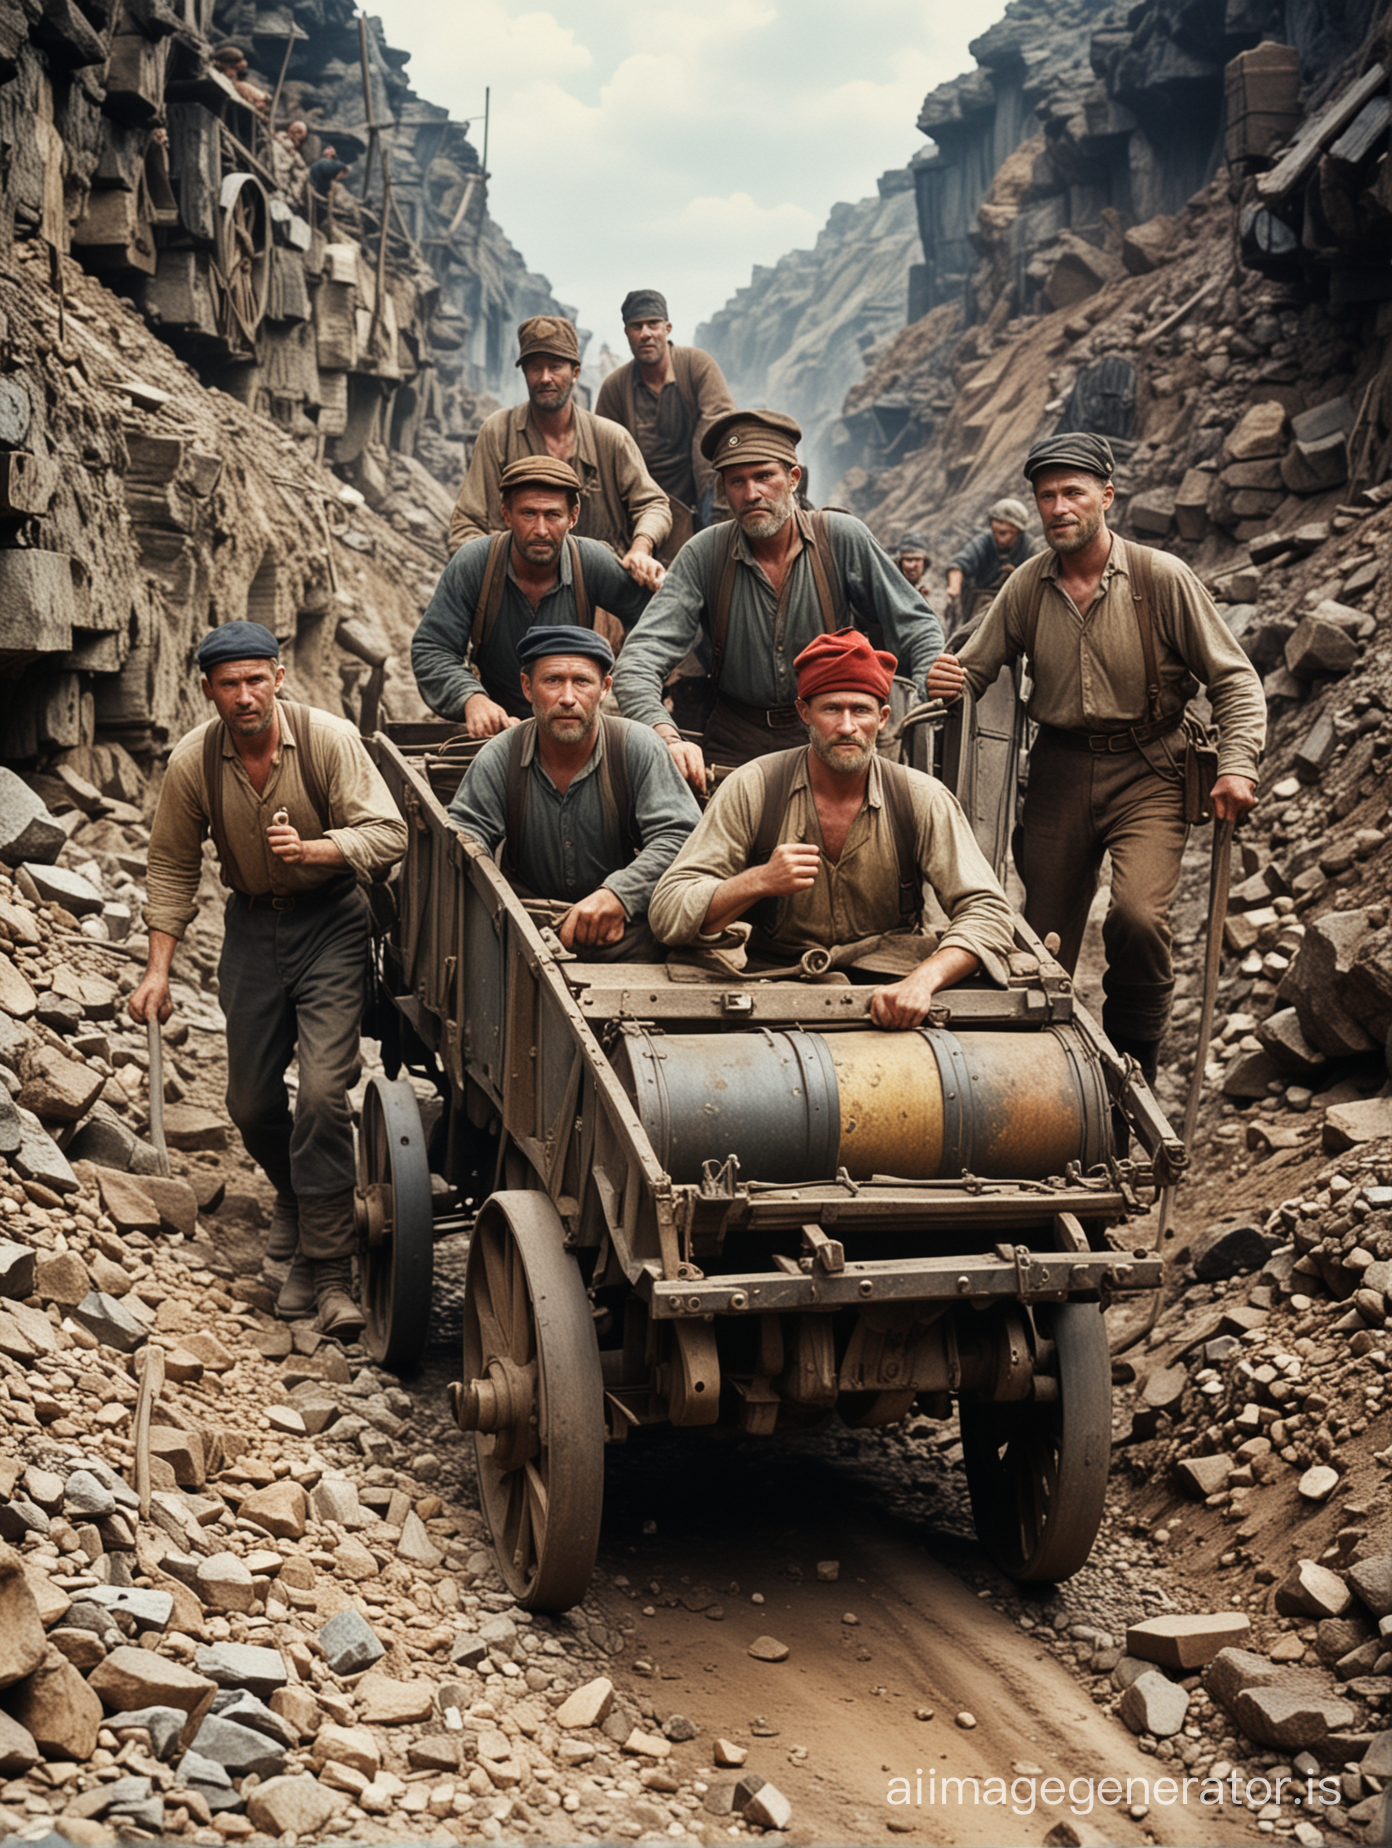 un groupe de 4 mineurs polonais sortant de la mine en poussant un wagonnet de mine en 1850, photo en couleurs
